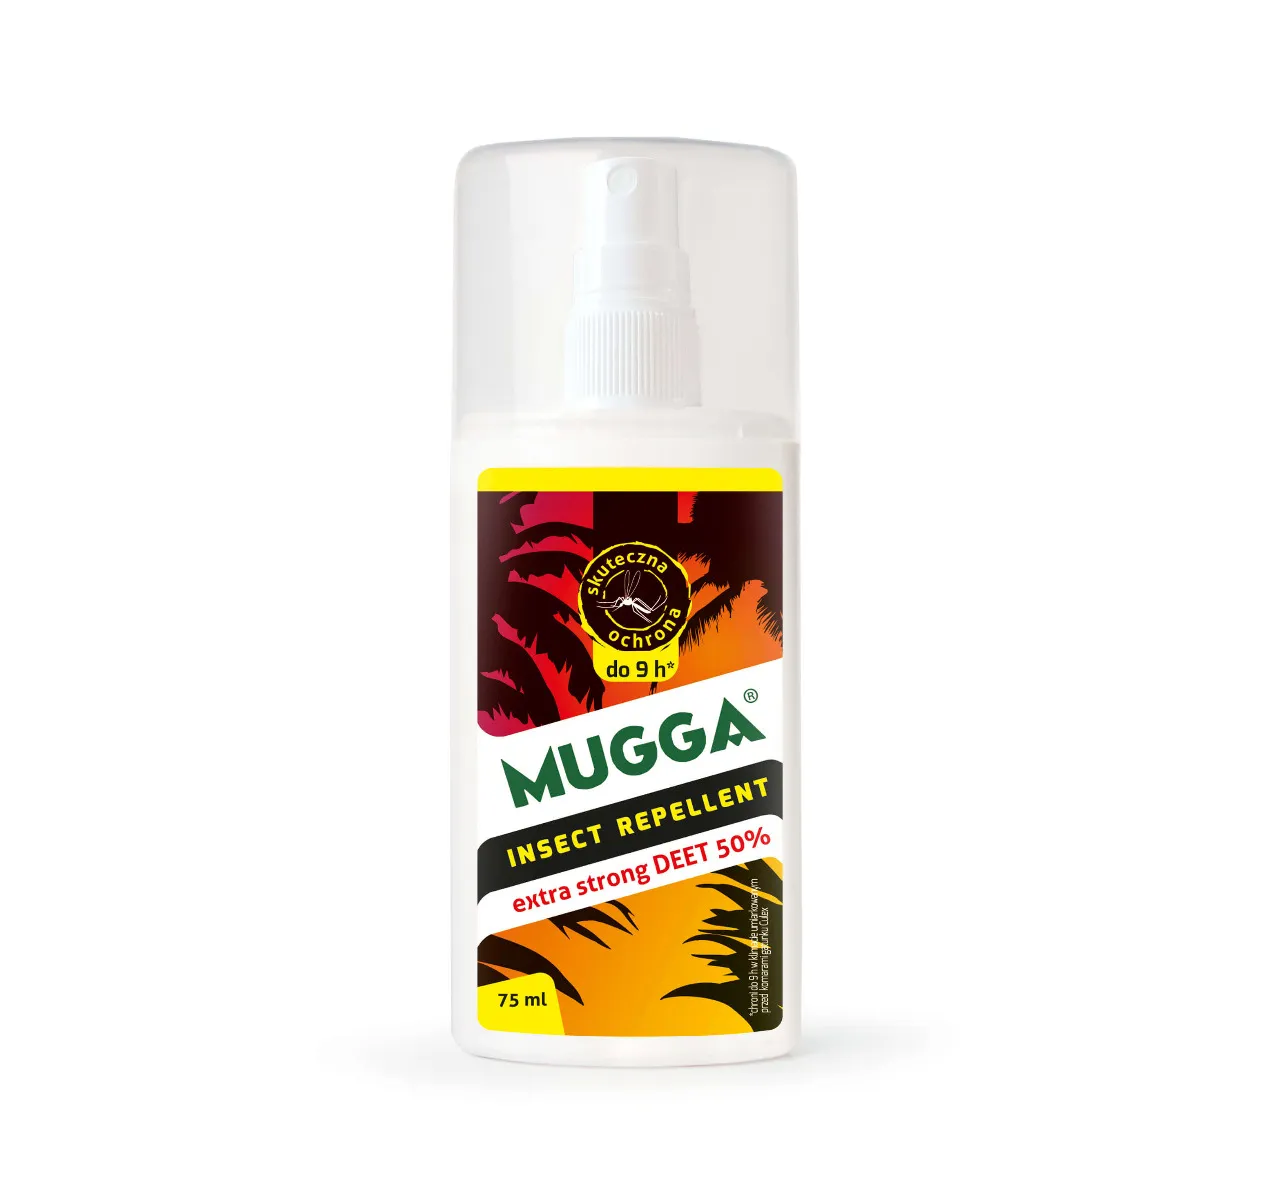 Mugga Strong Spray DEET 50%, spray przeciw komarom, kleszczom, 75 ml